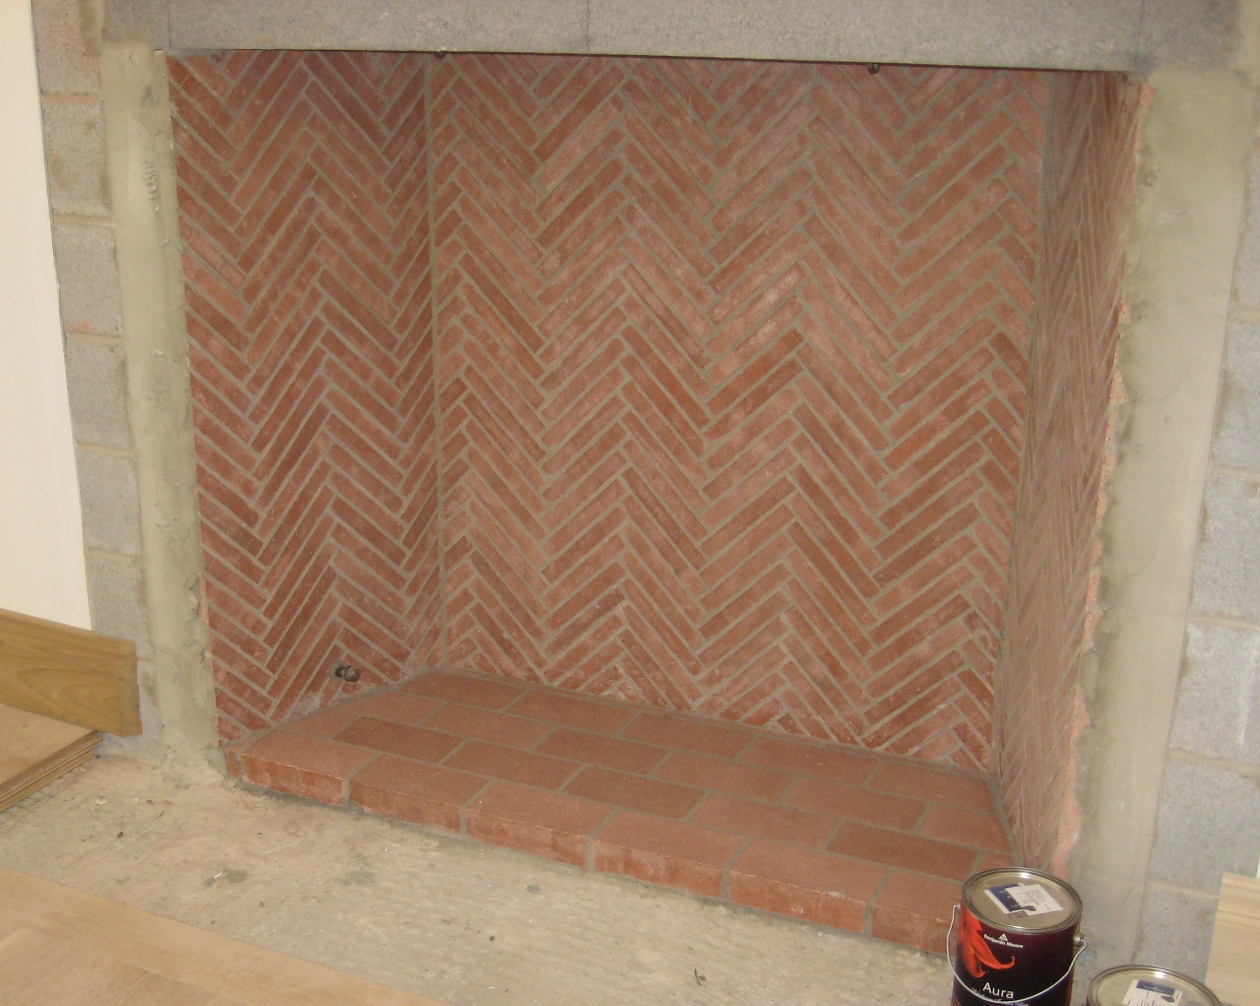 Heat Stop Refractory Cement